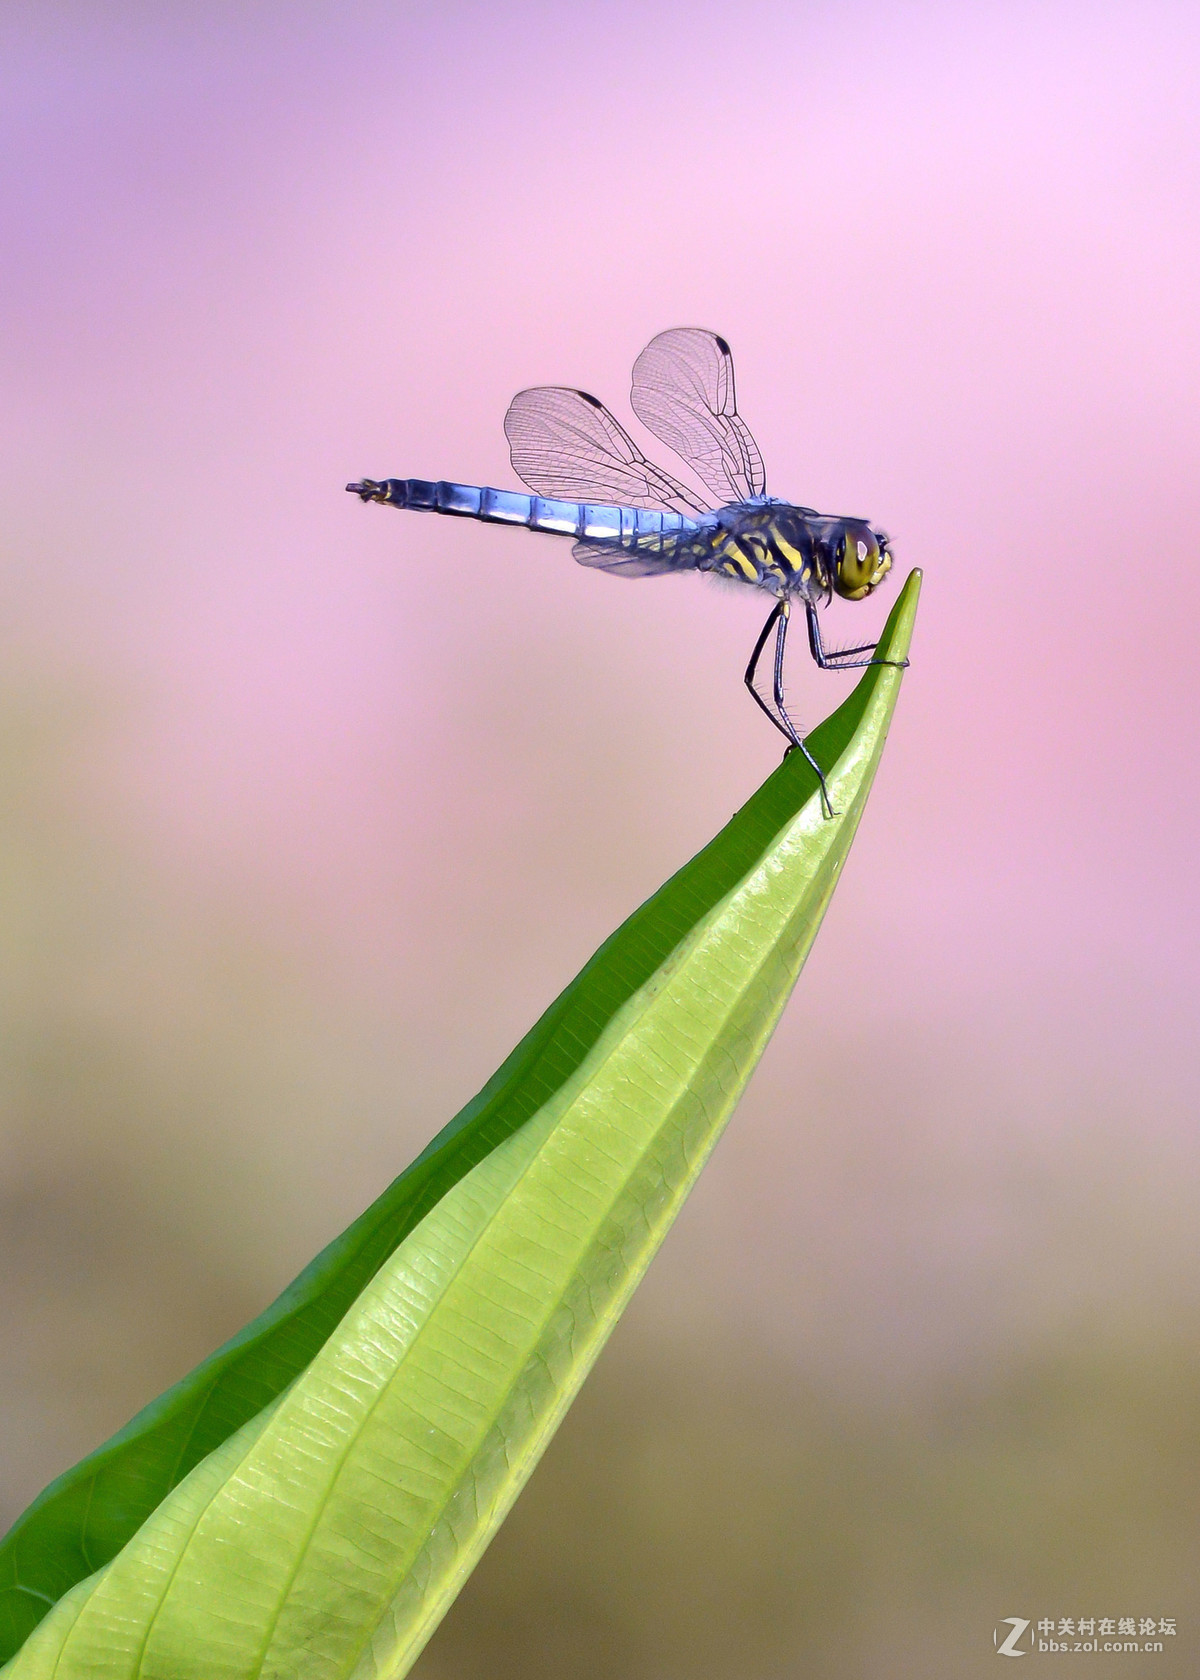 二愣子蜻蜓图片